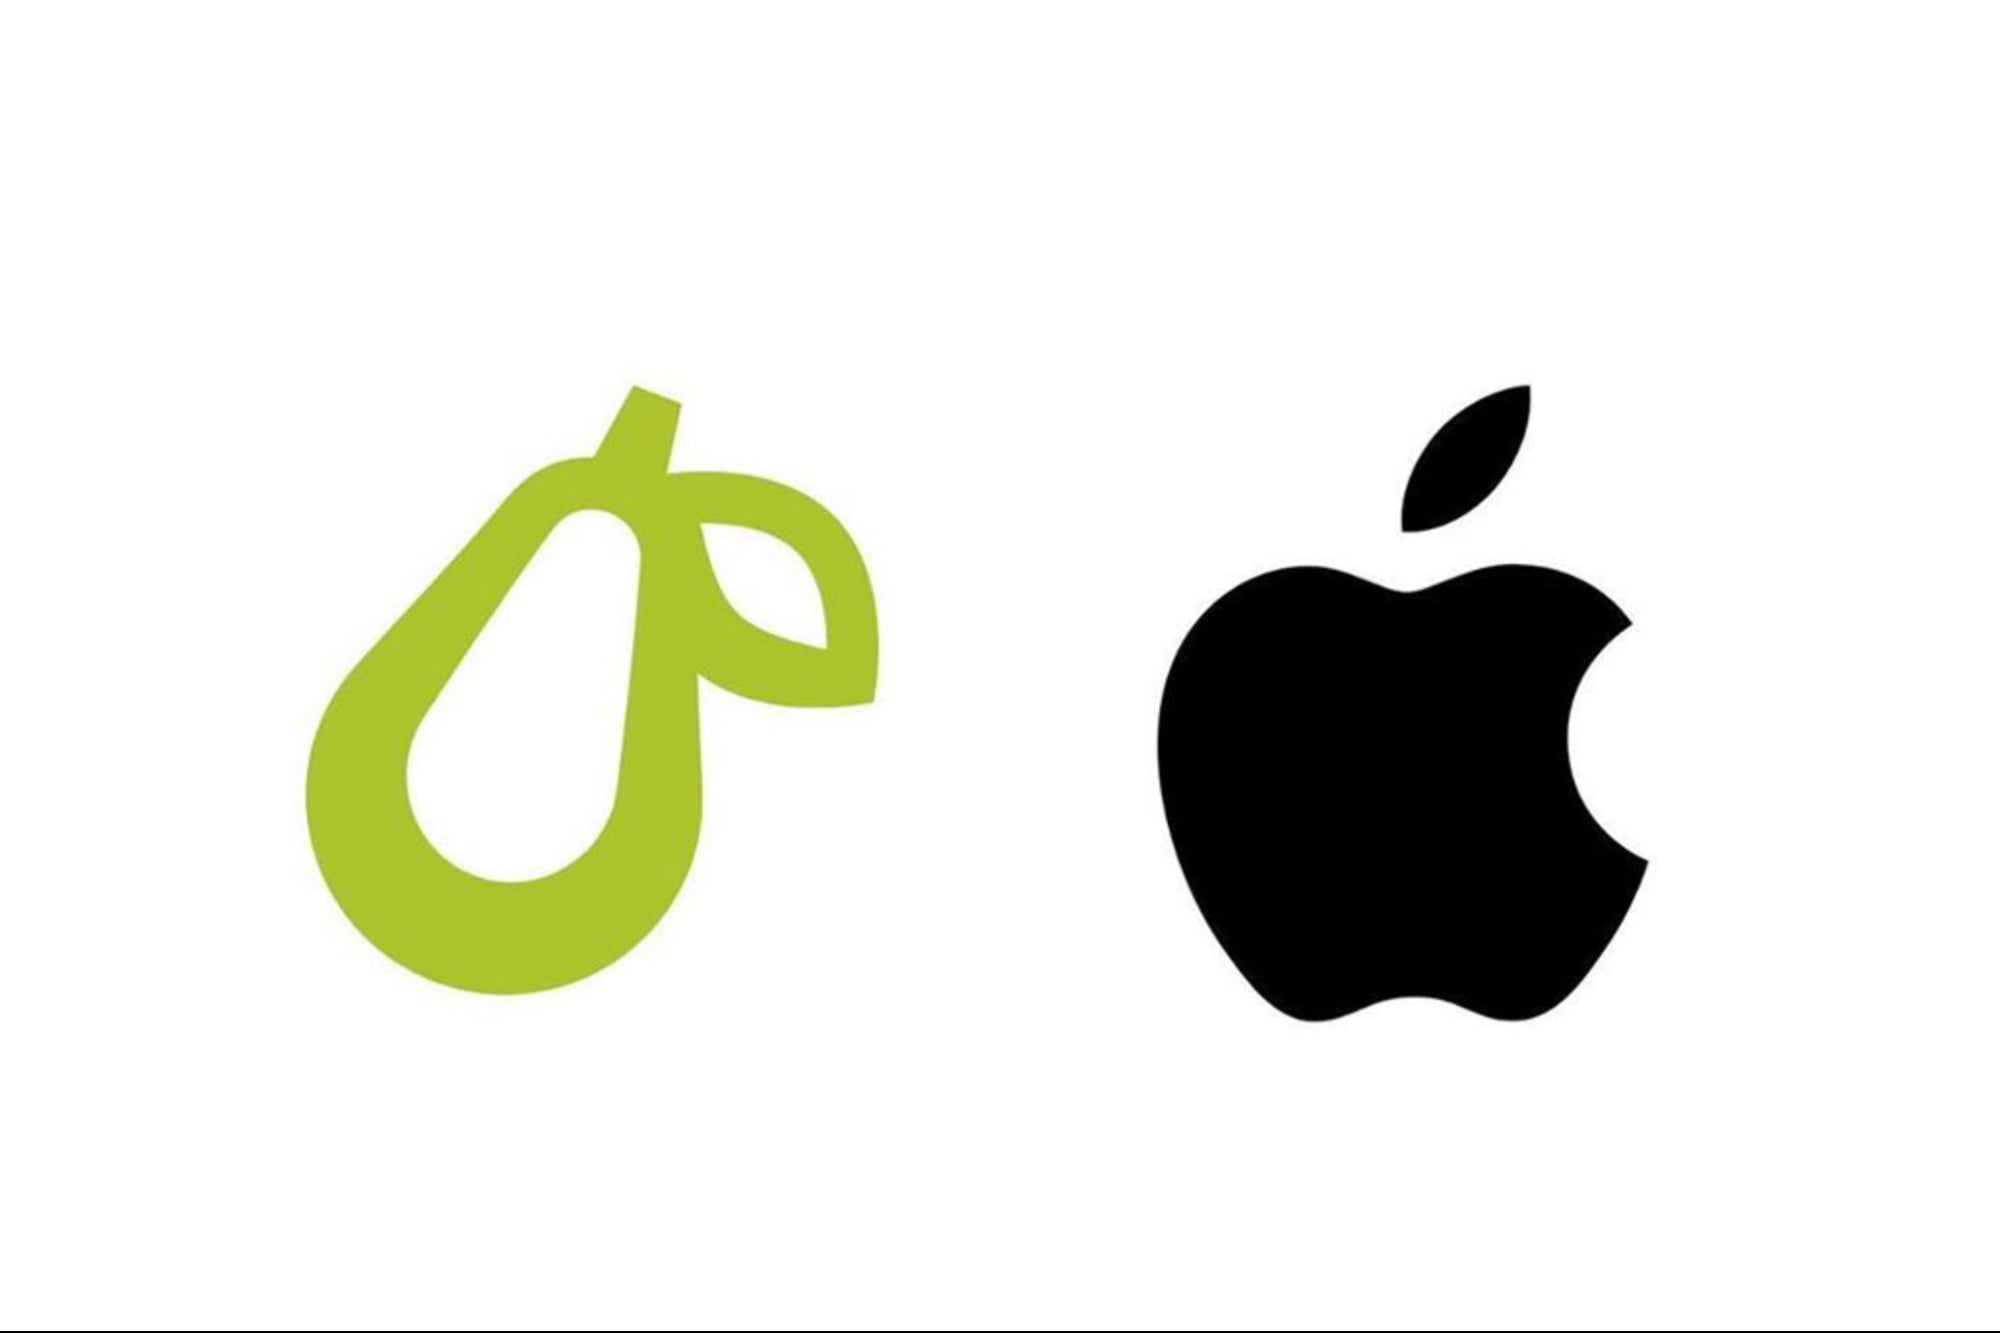 Apple demanda a una pequeña empresa con un logo de pera porque 'la gente se puede confundir'